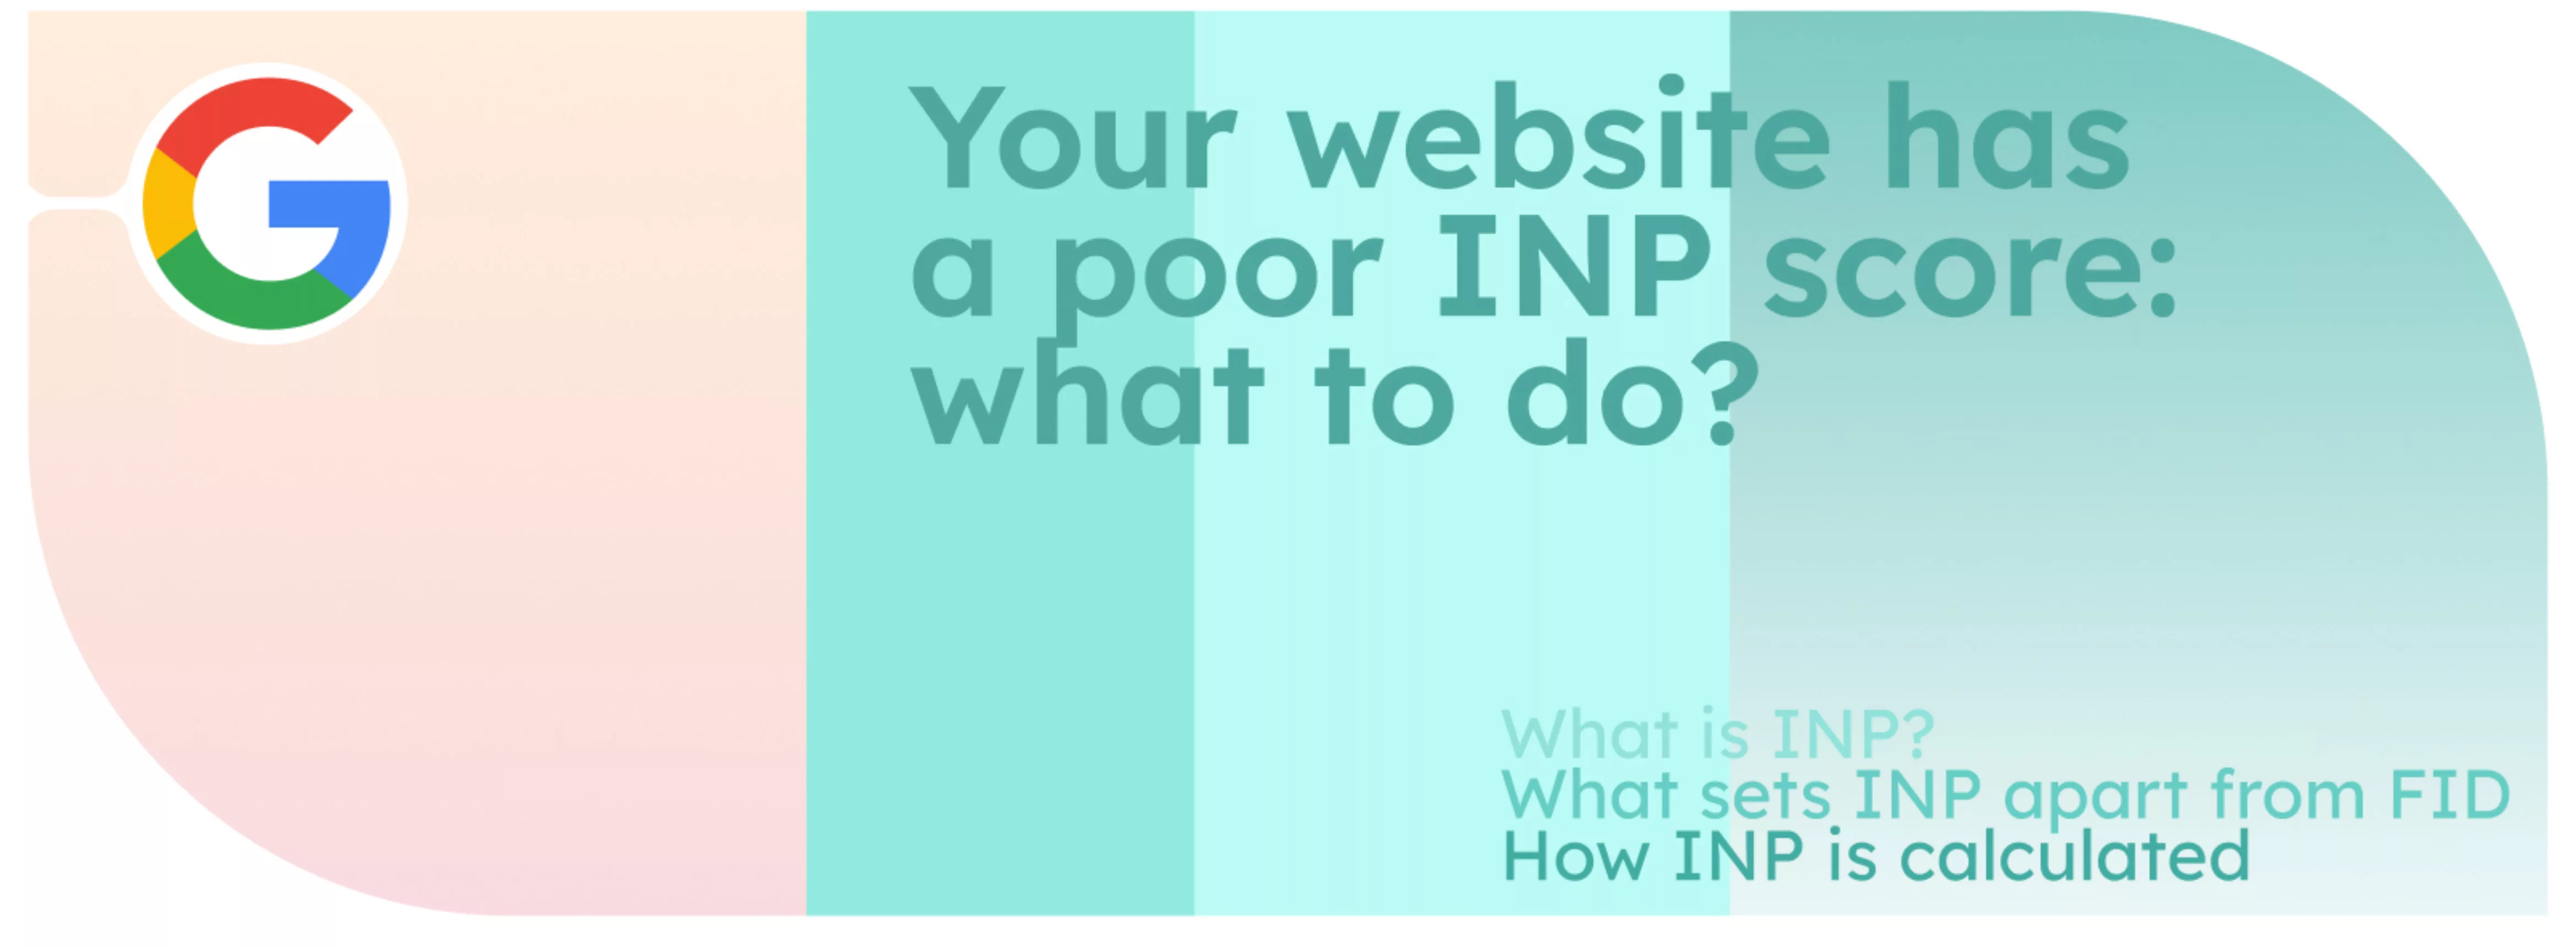 Uw website heeft een slechte INP-score: wat moet ik doen?